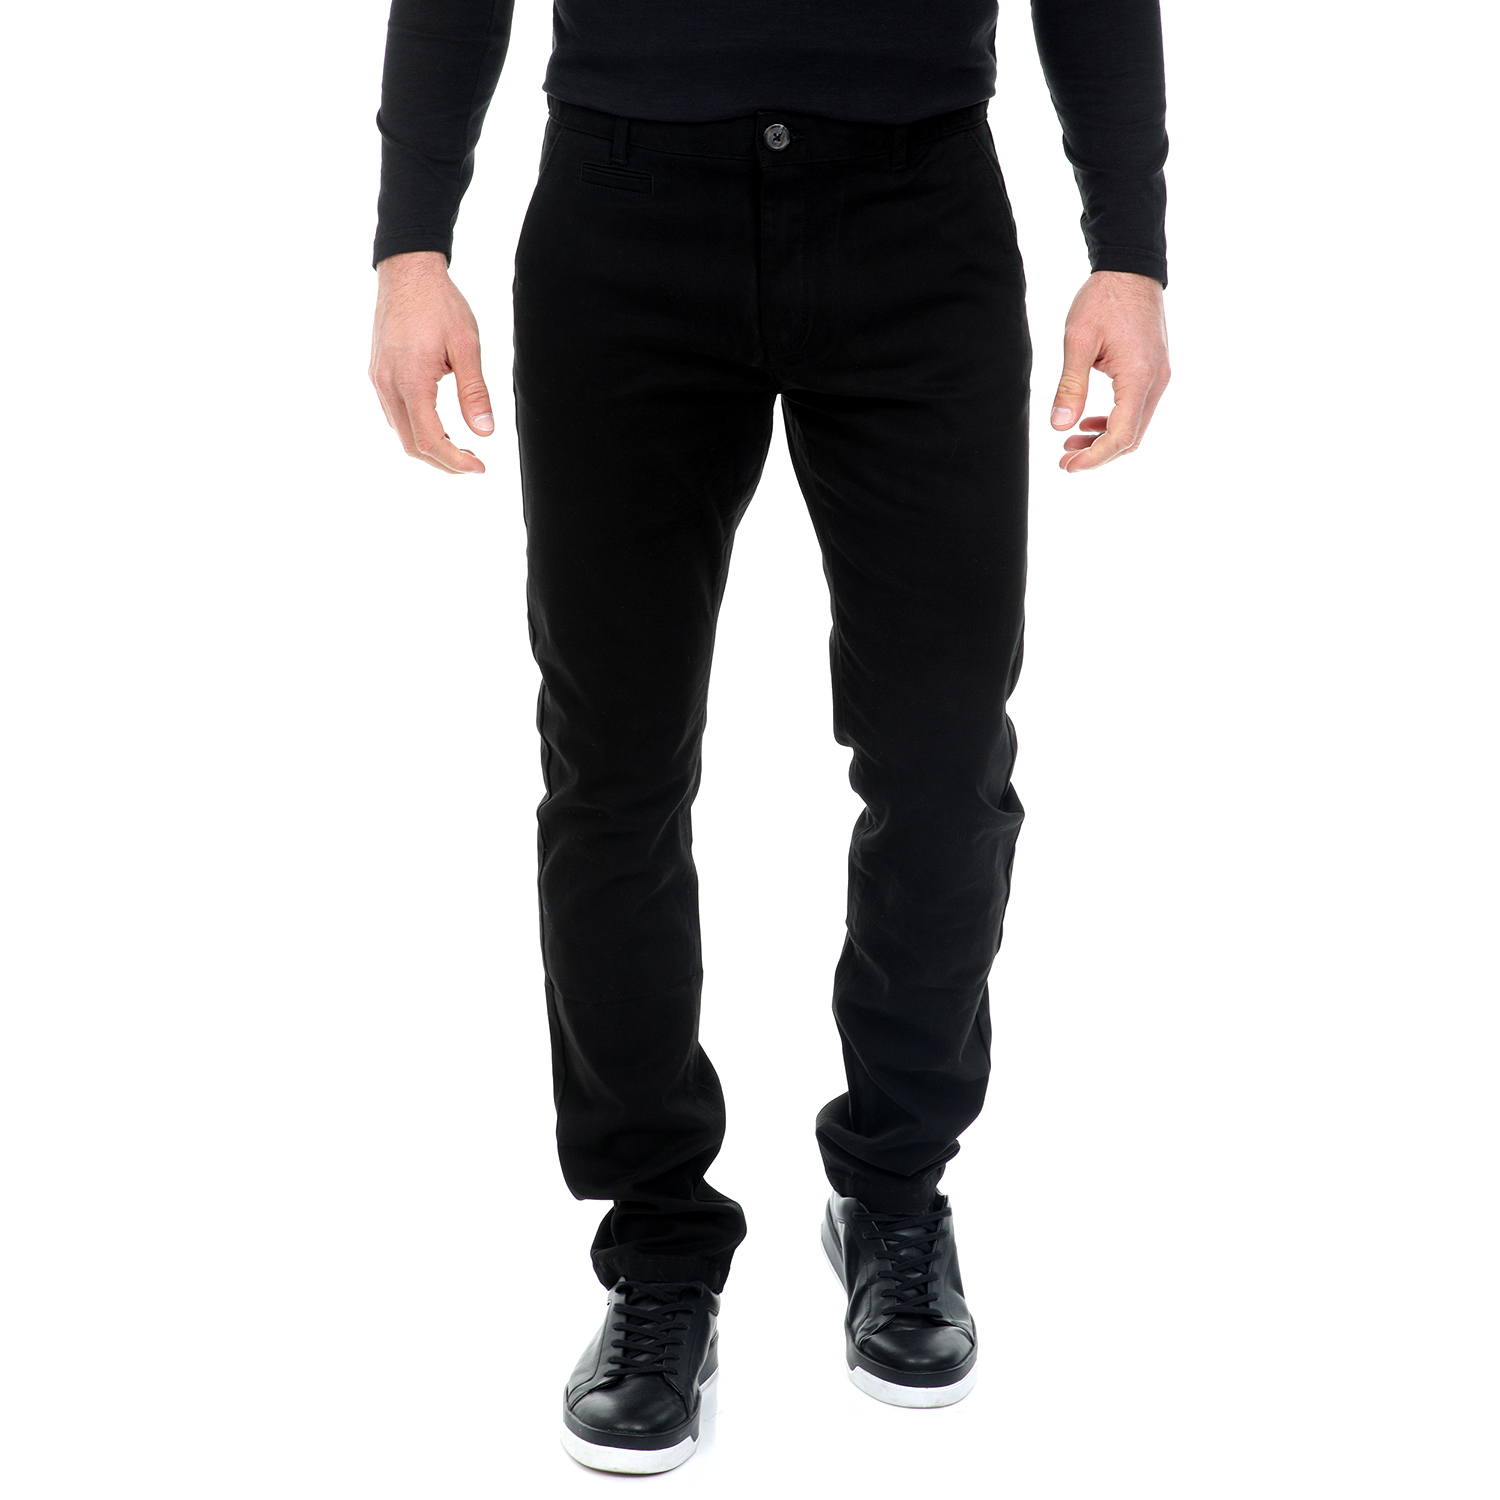 Ανδρικά/Ρούχα/Παντελόνια/Chinos BATTERY - Ανδρικό chino παντελόνι BATTERY μαύρο